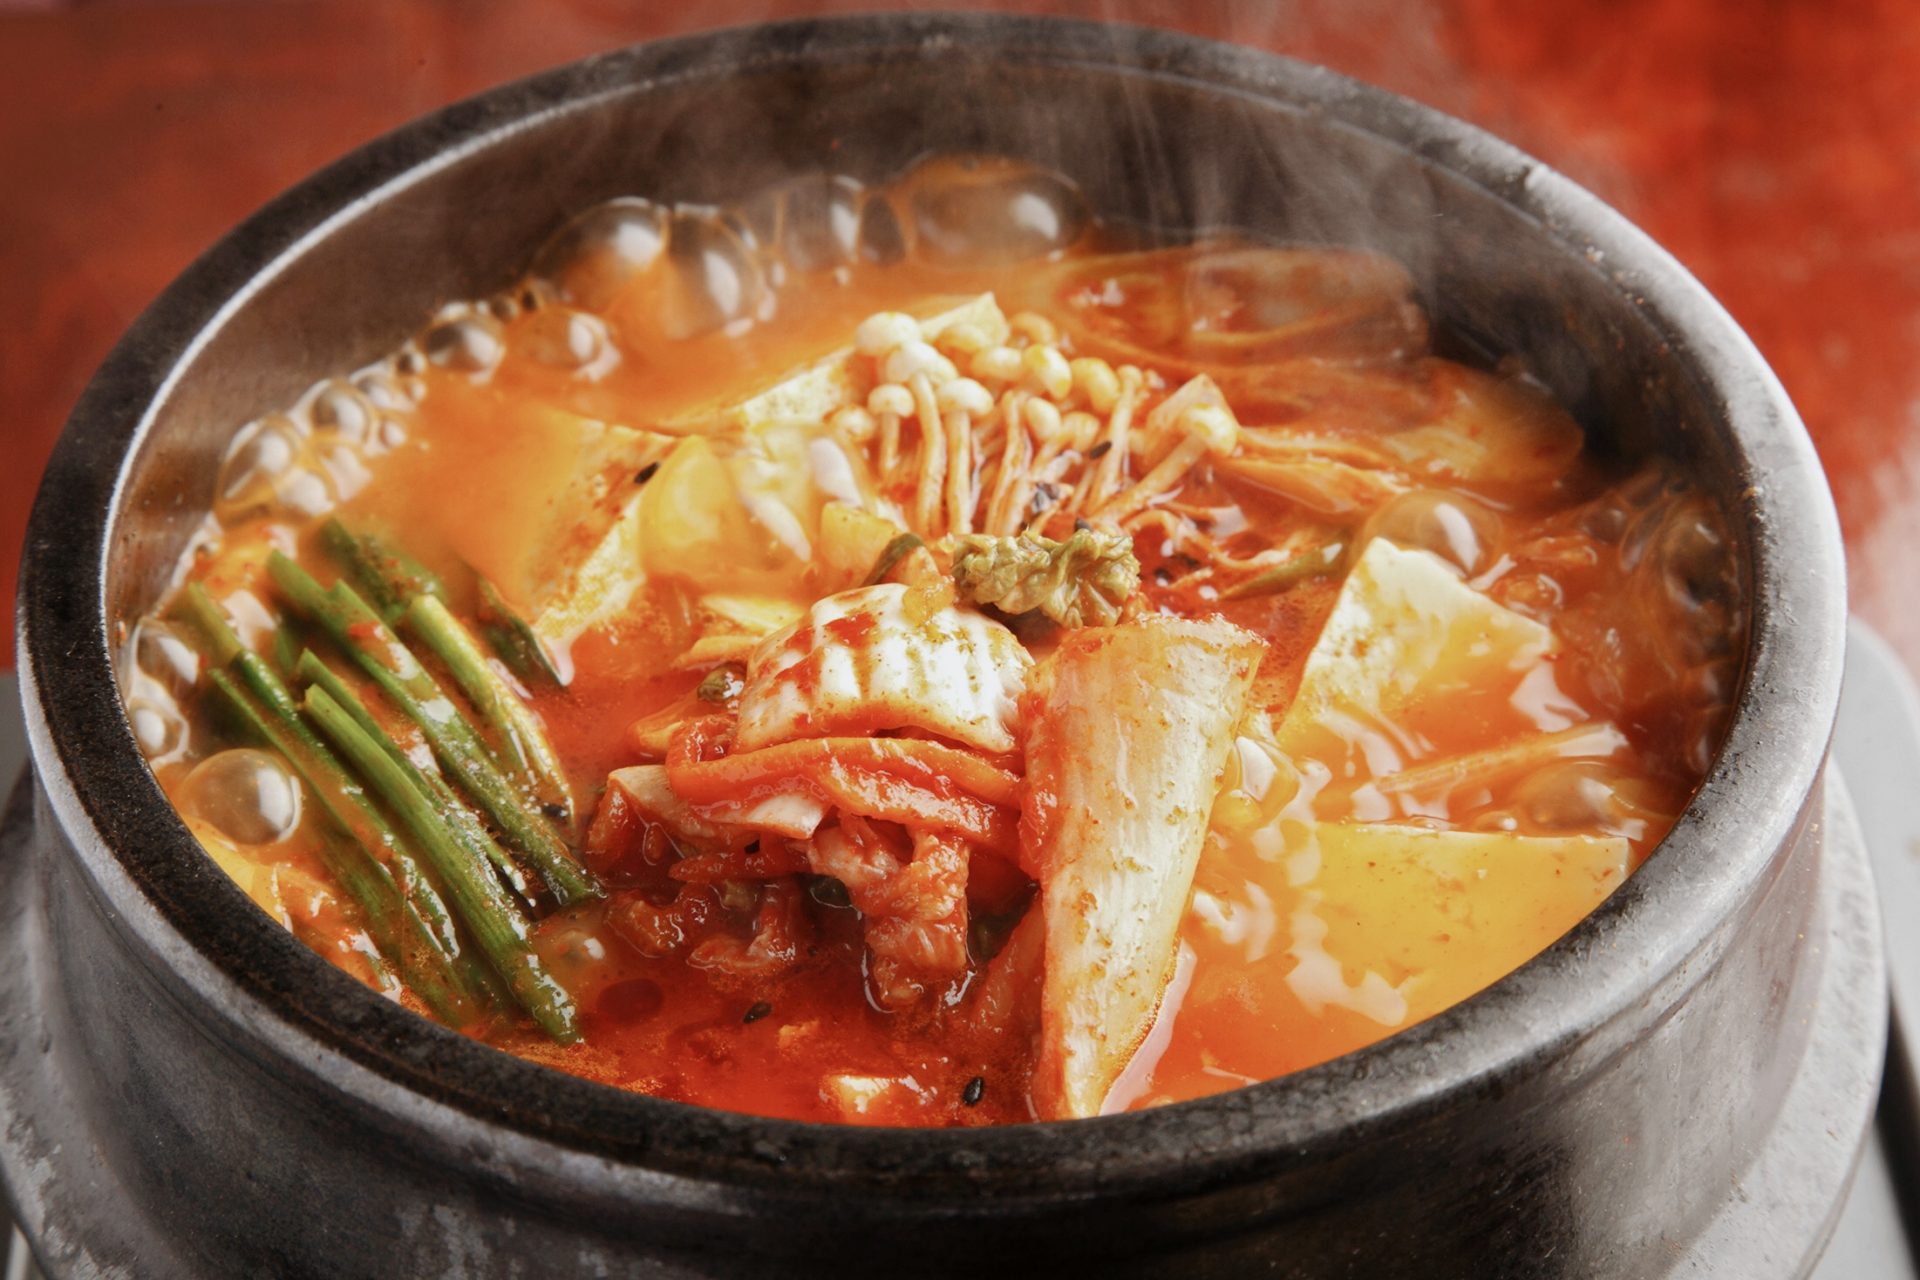 アジアの鍋は種類豊富！この冬は鍋料理探索で卓上の旅へ|日本の鍋料理事情